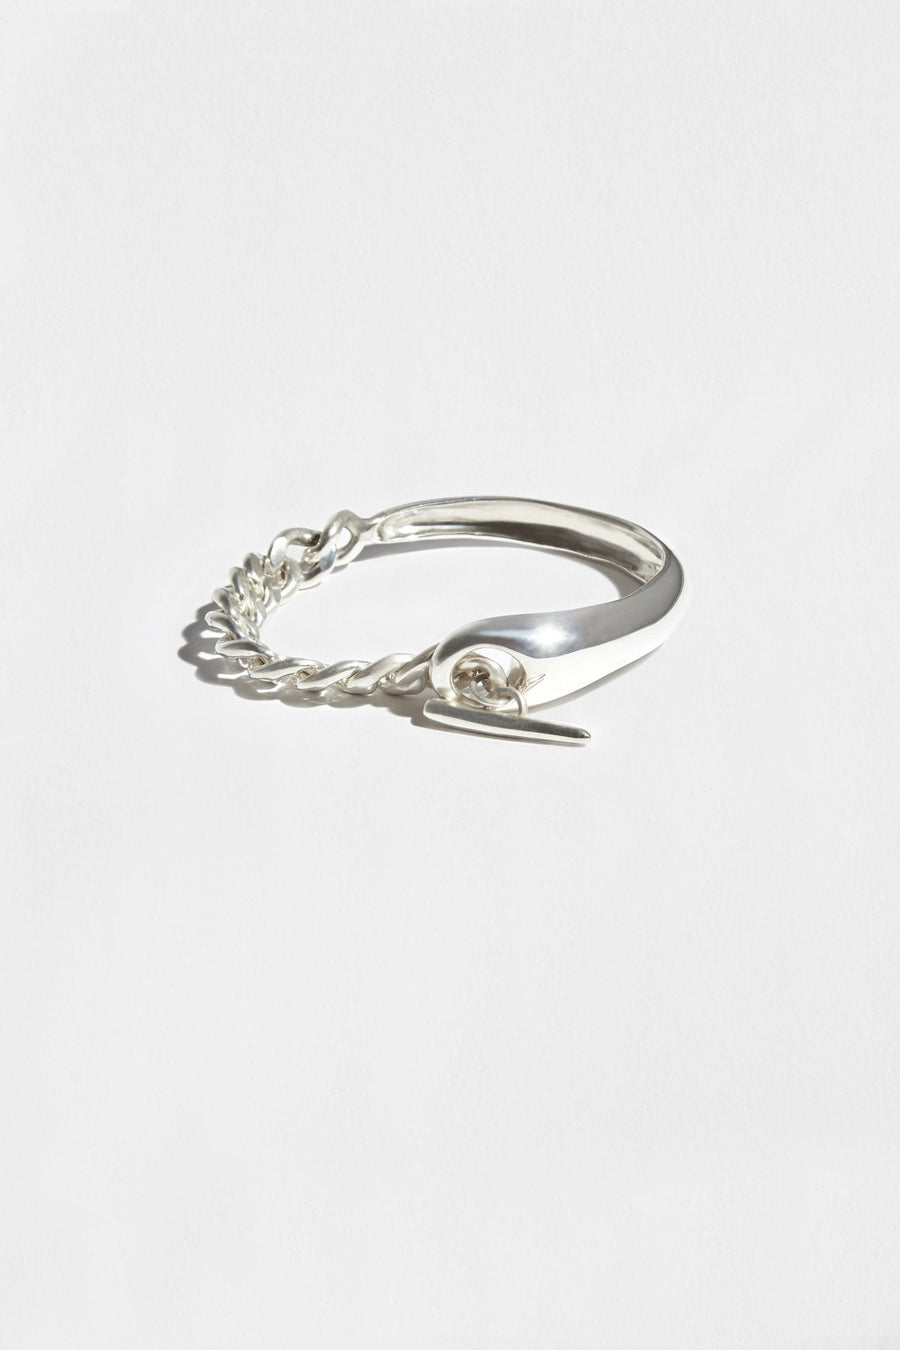 Hernan Herdez- Jewellery-jewelry-Jeryco Store- London- Bracelet-bracelets for him-bracelets for her-unisex bracelets- sterling silver- chain bracelet- toggle bracelet-chunky sterling silver bracelet-cuff chain bracelet